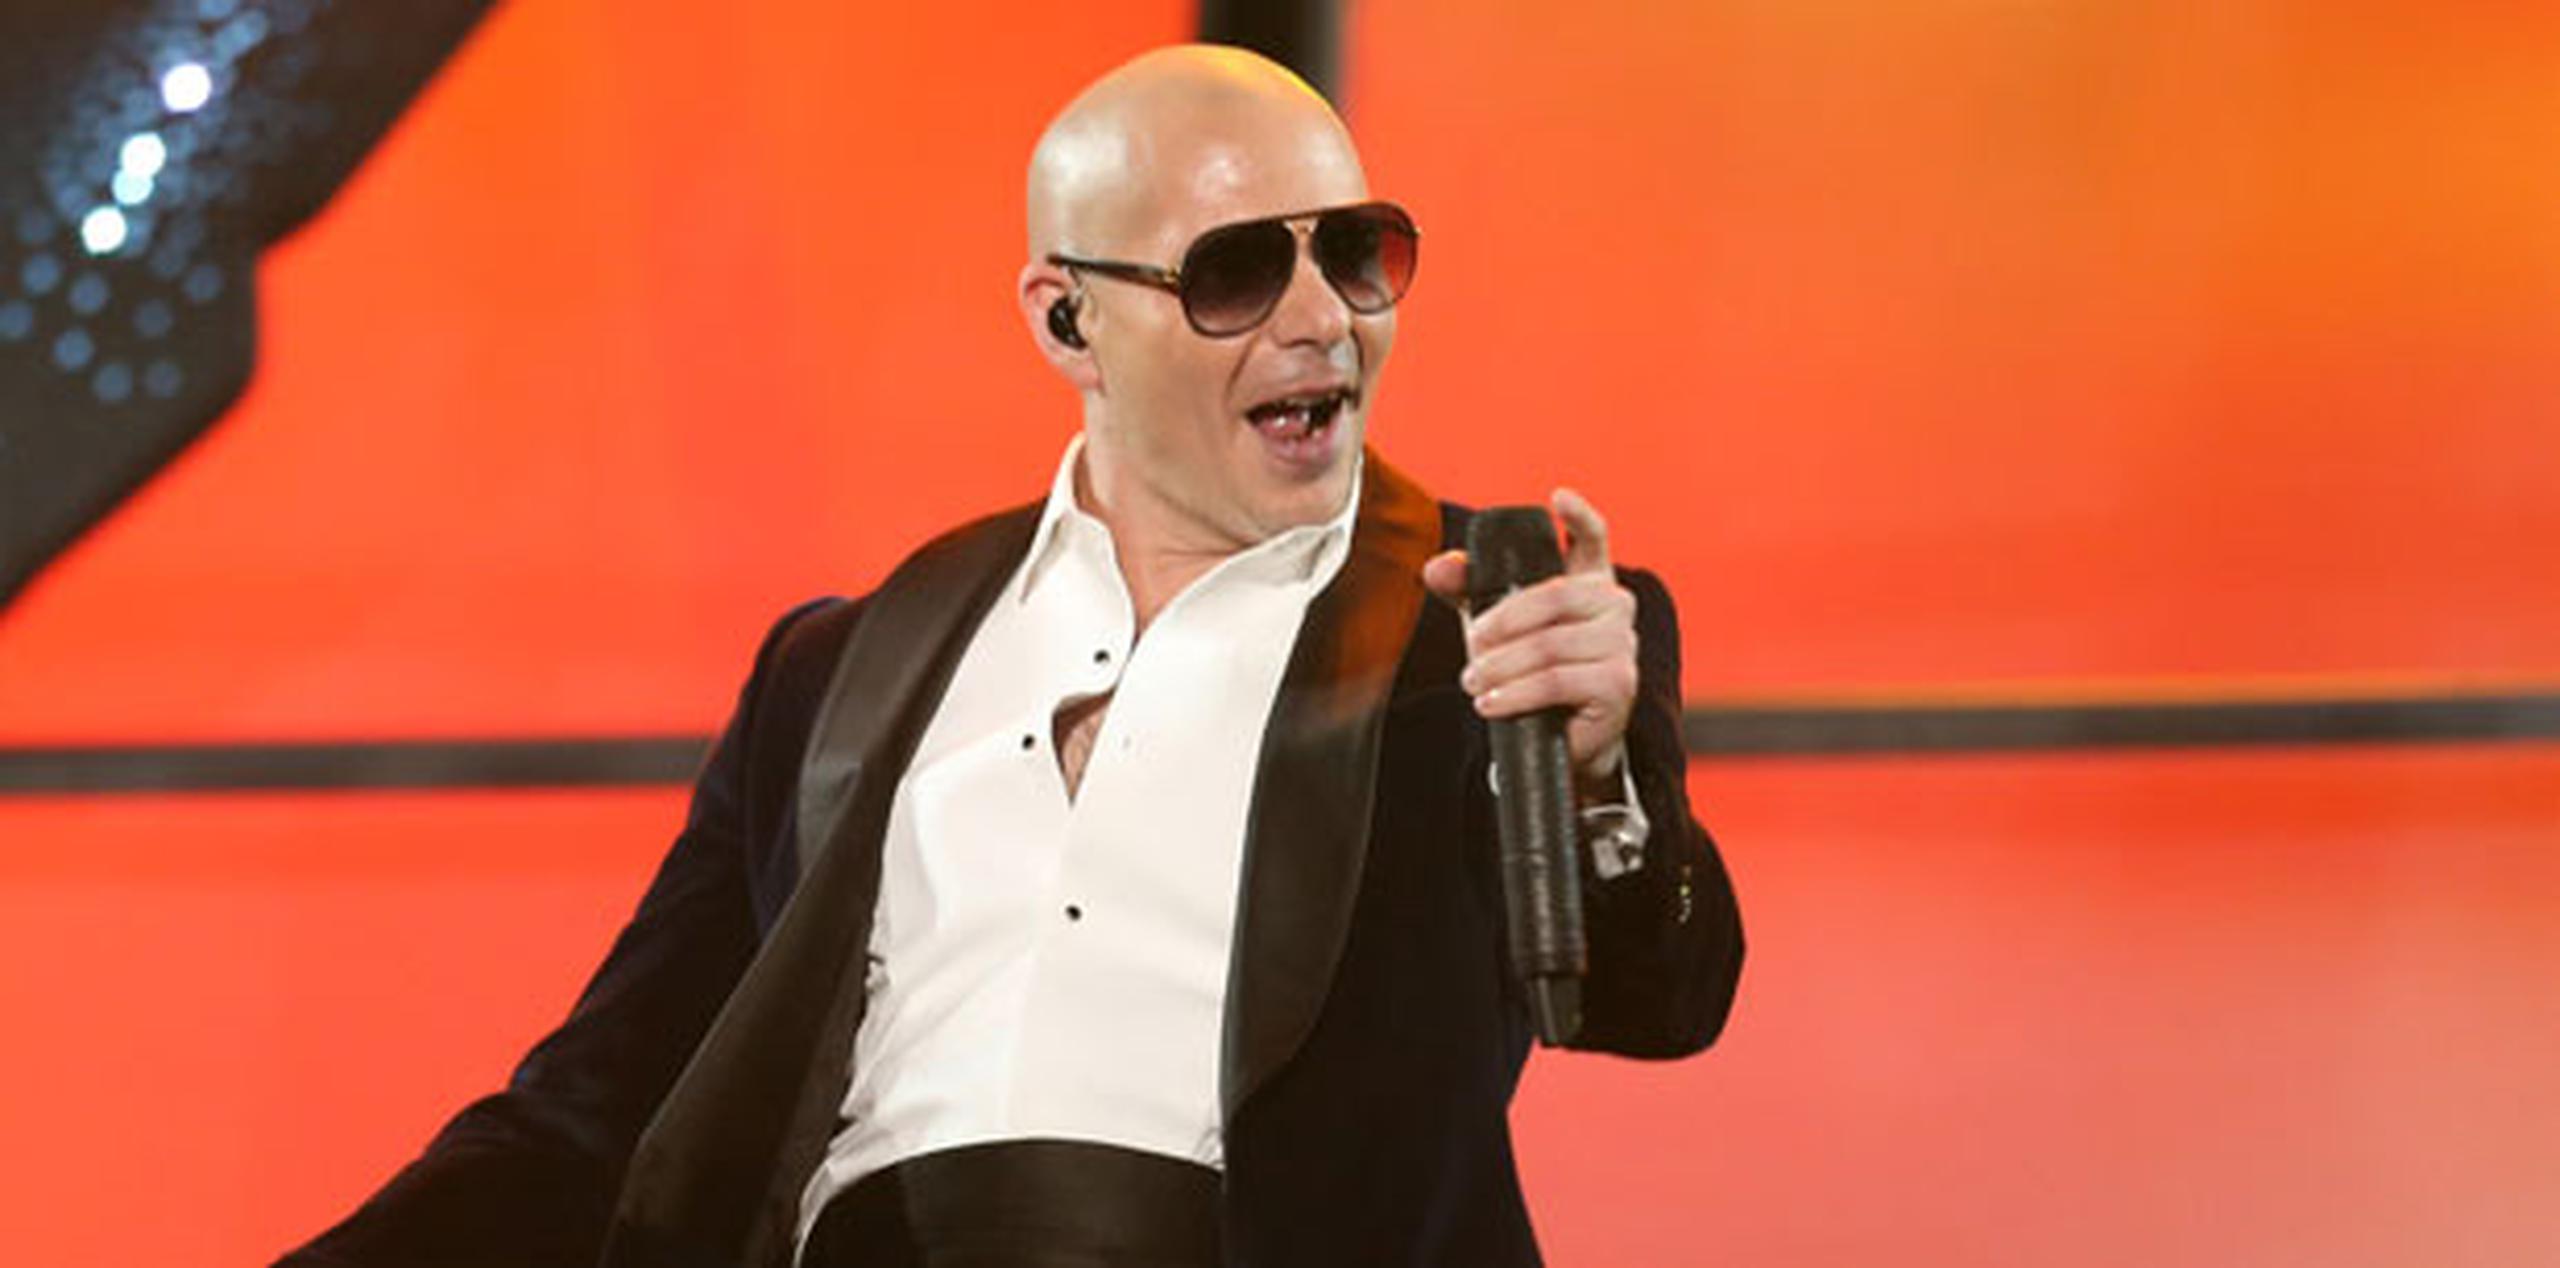 La más reciente ceremonia se realizó en el Teatro Nokia de Los Ángeles con Pitbull como anfitrión. (Archivo)